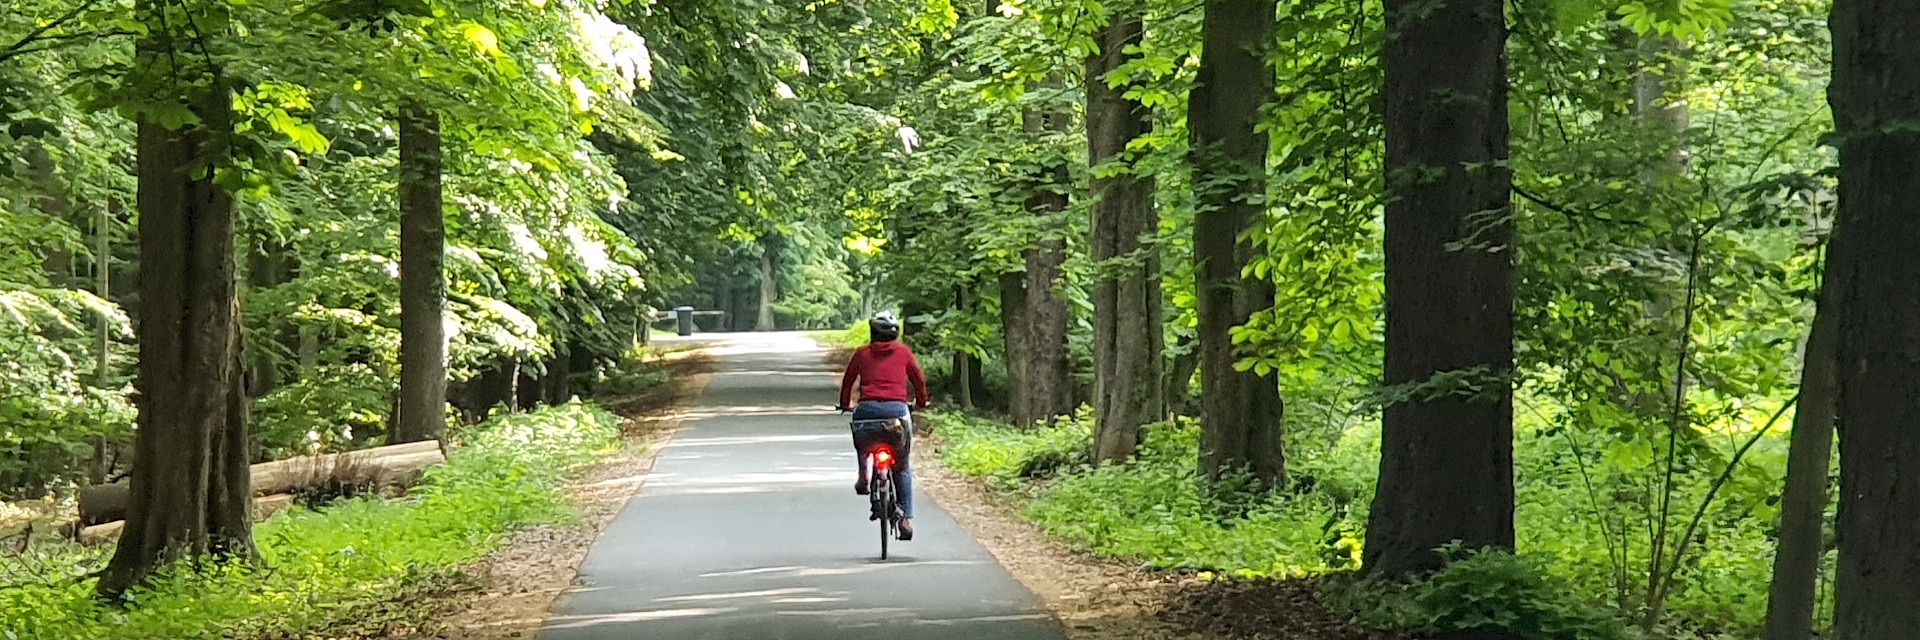 Radfahrer auf einem Waldweg